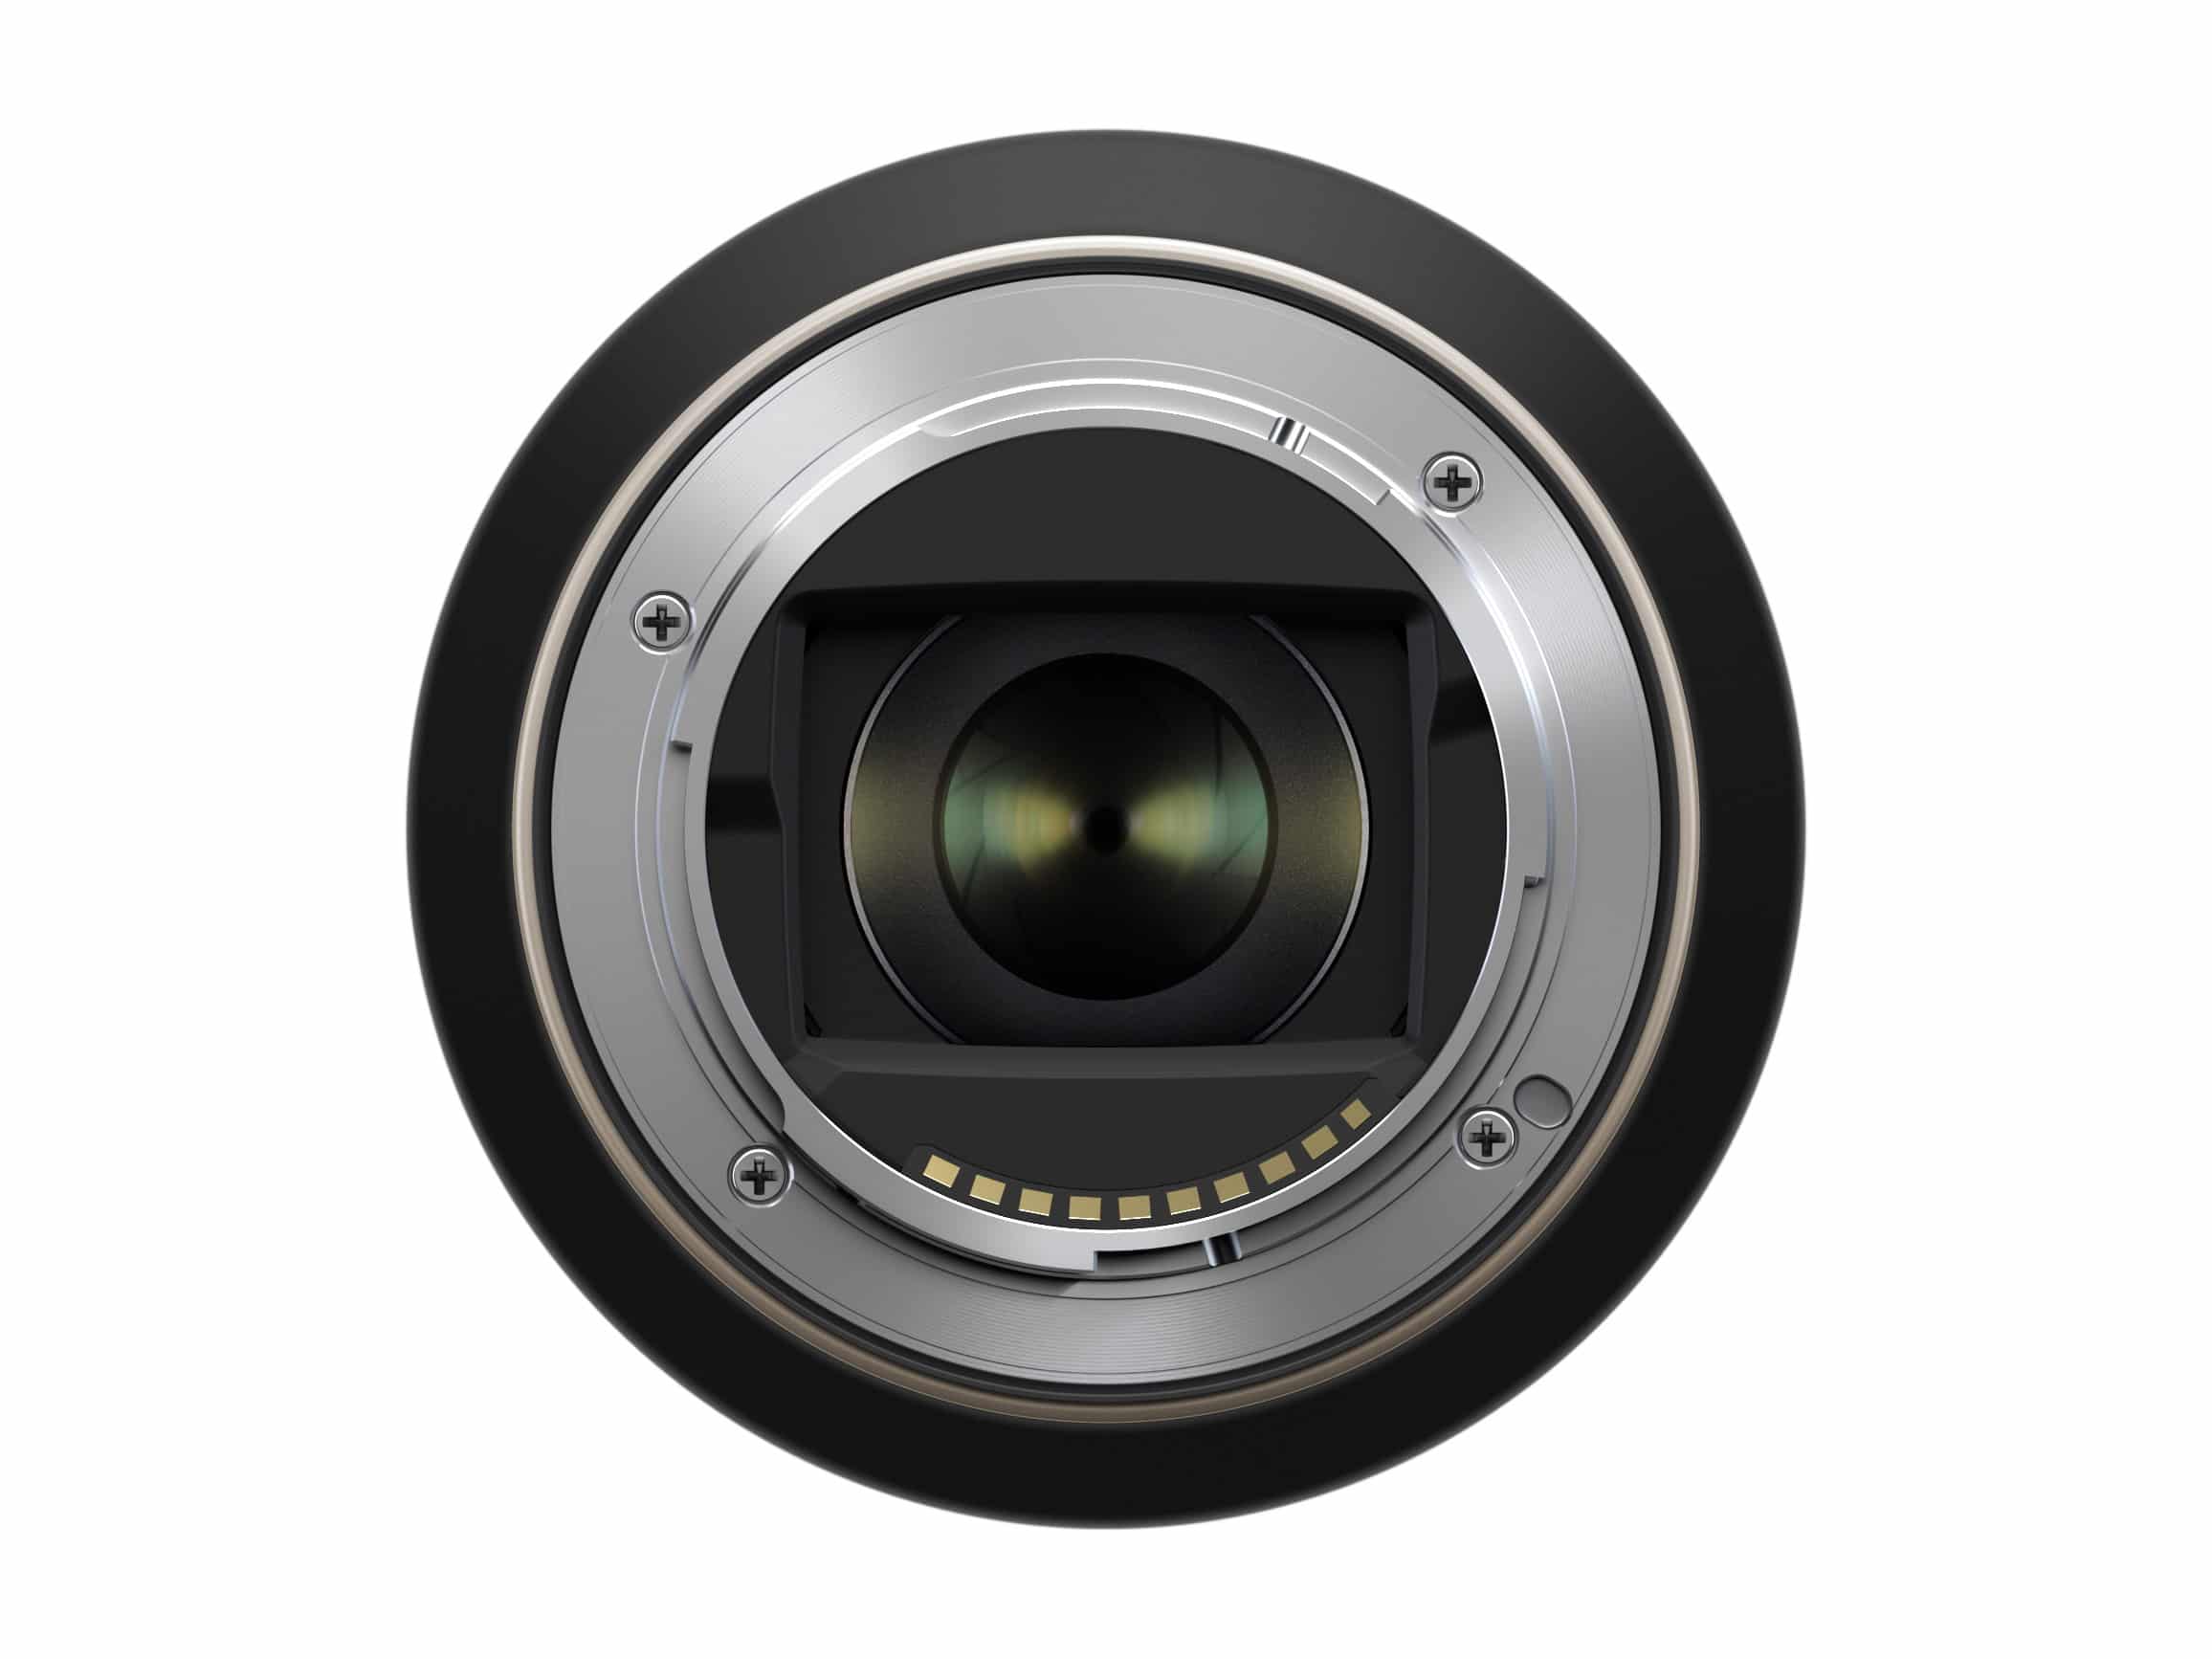 Tamron ra mắt ống kính 17-70mm F2.8 cho các máy ảnh Sony APS-C